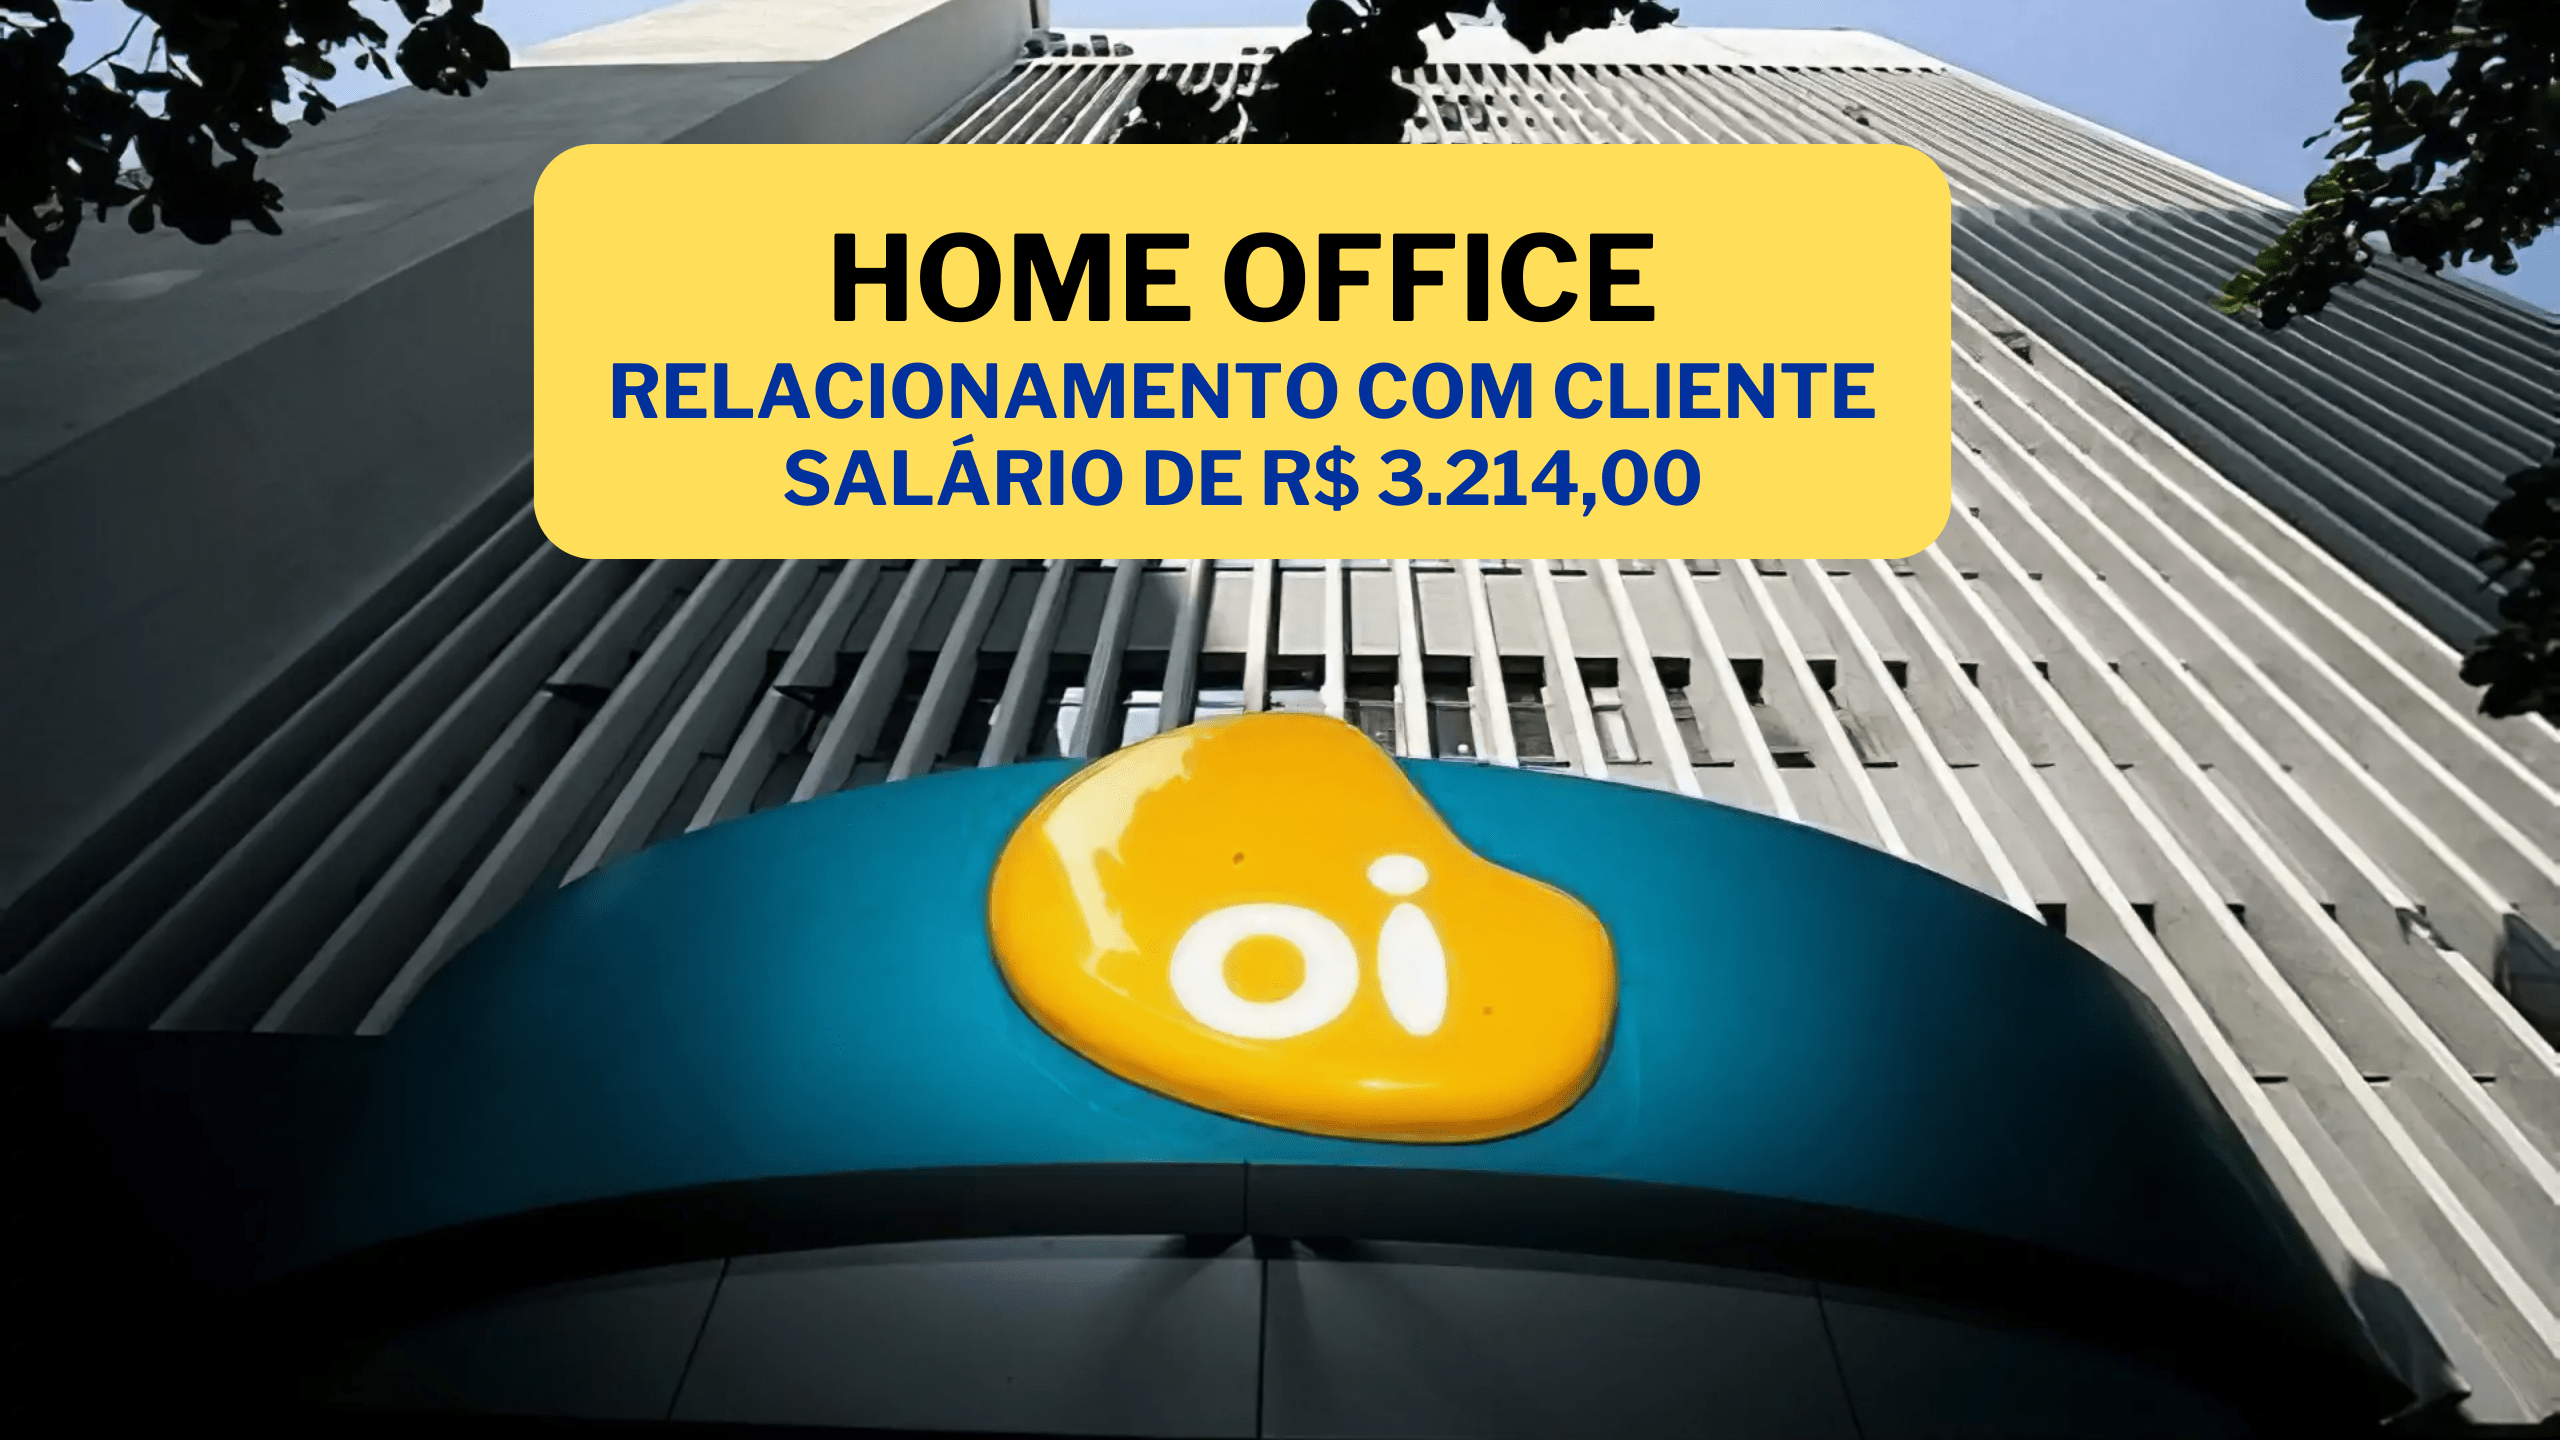 Operadora OI abre vagas 100% HOME OFFICE para Relacionamento com Cliente com salário de R$ 3.214,00